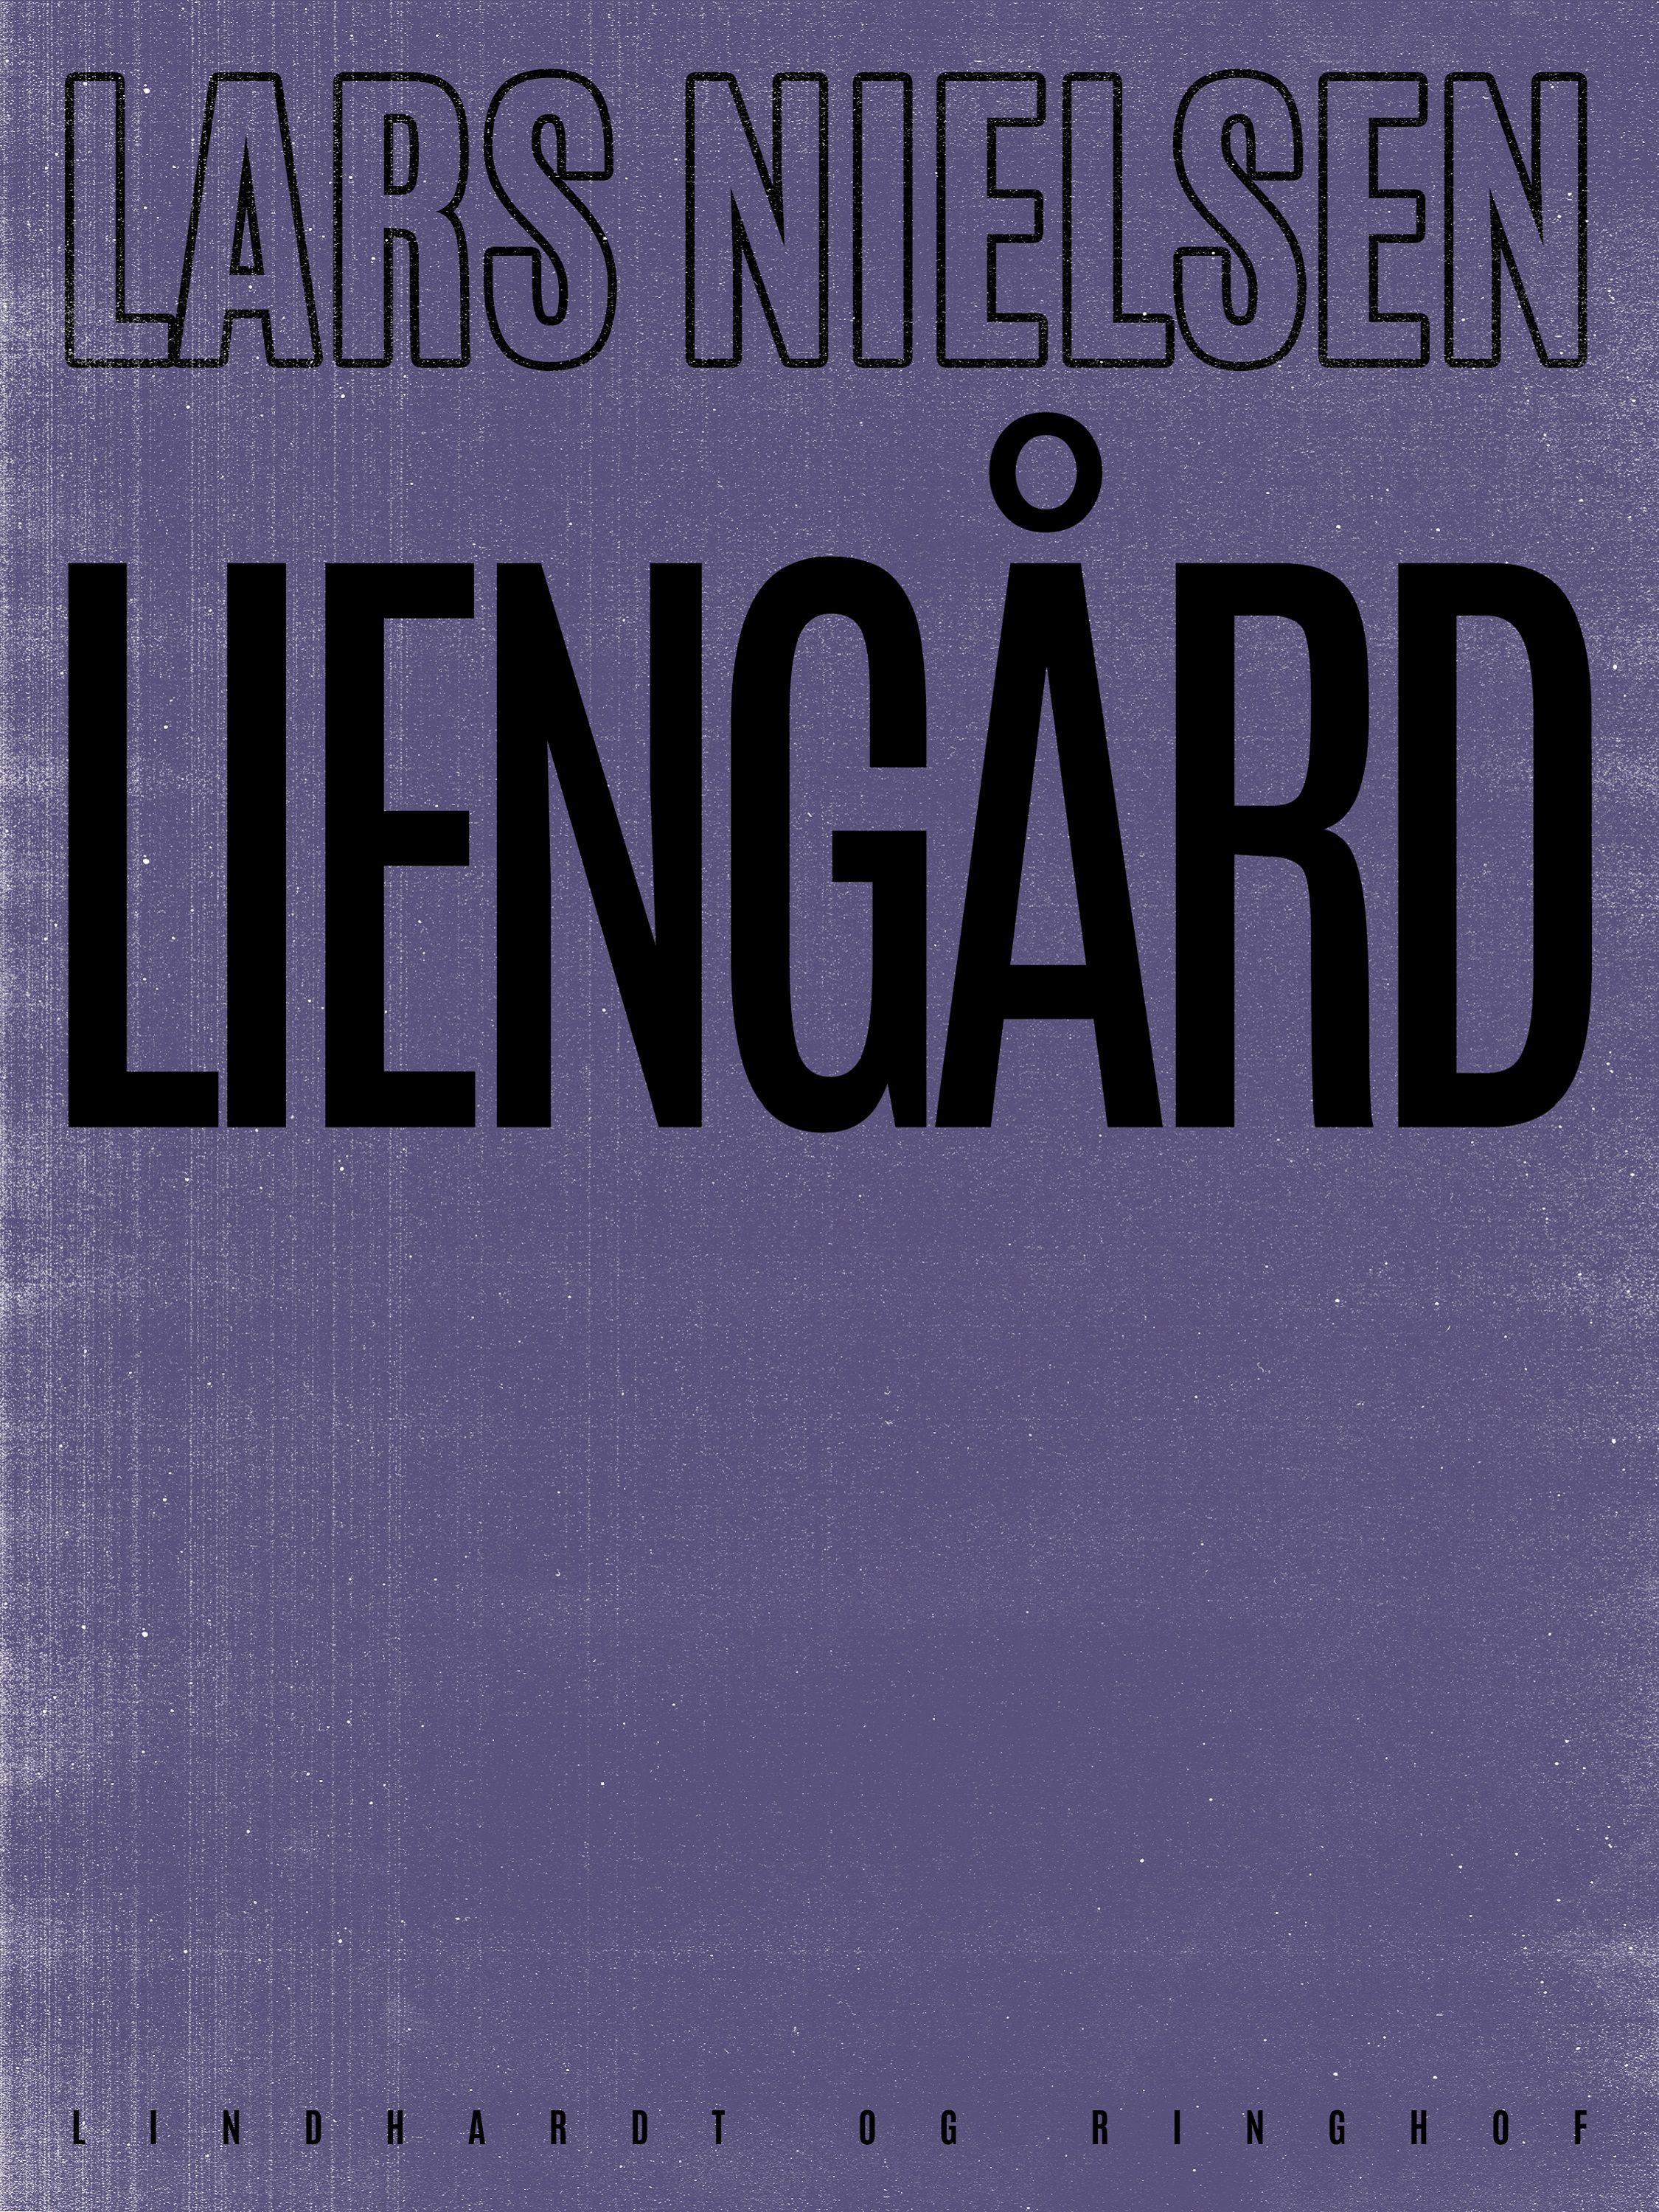 Liengård, lydbog af Lars Nielsen